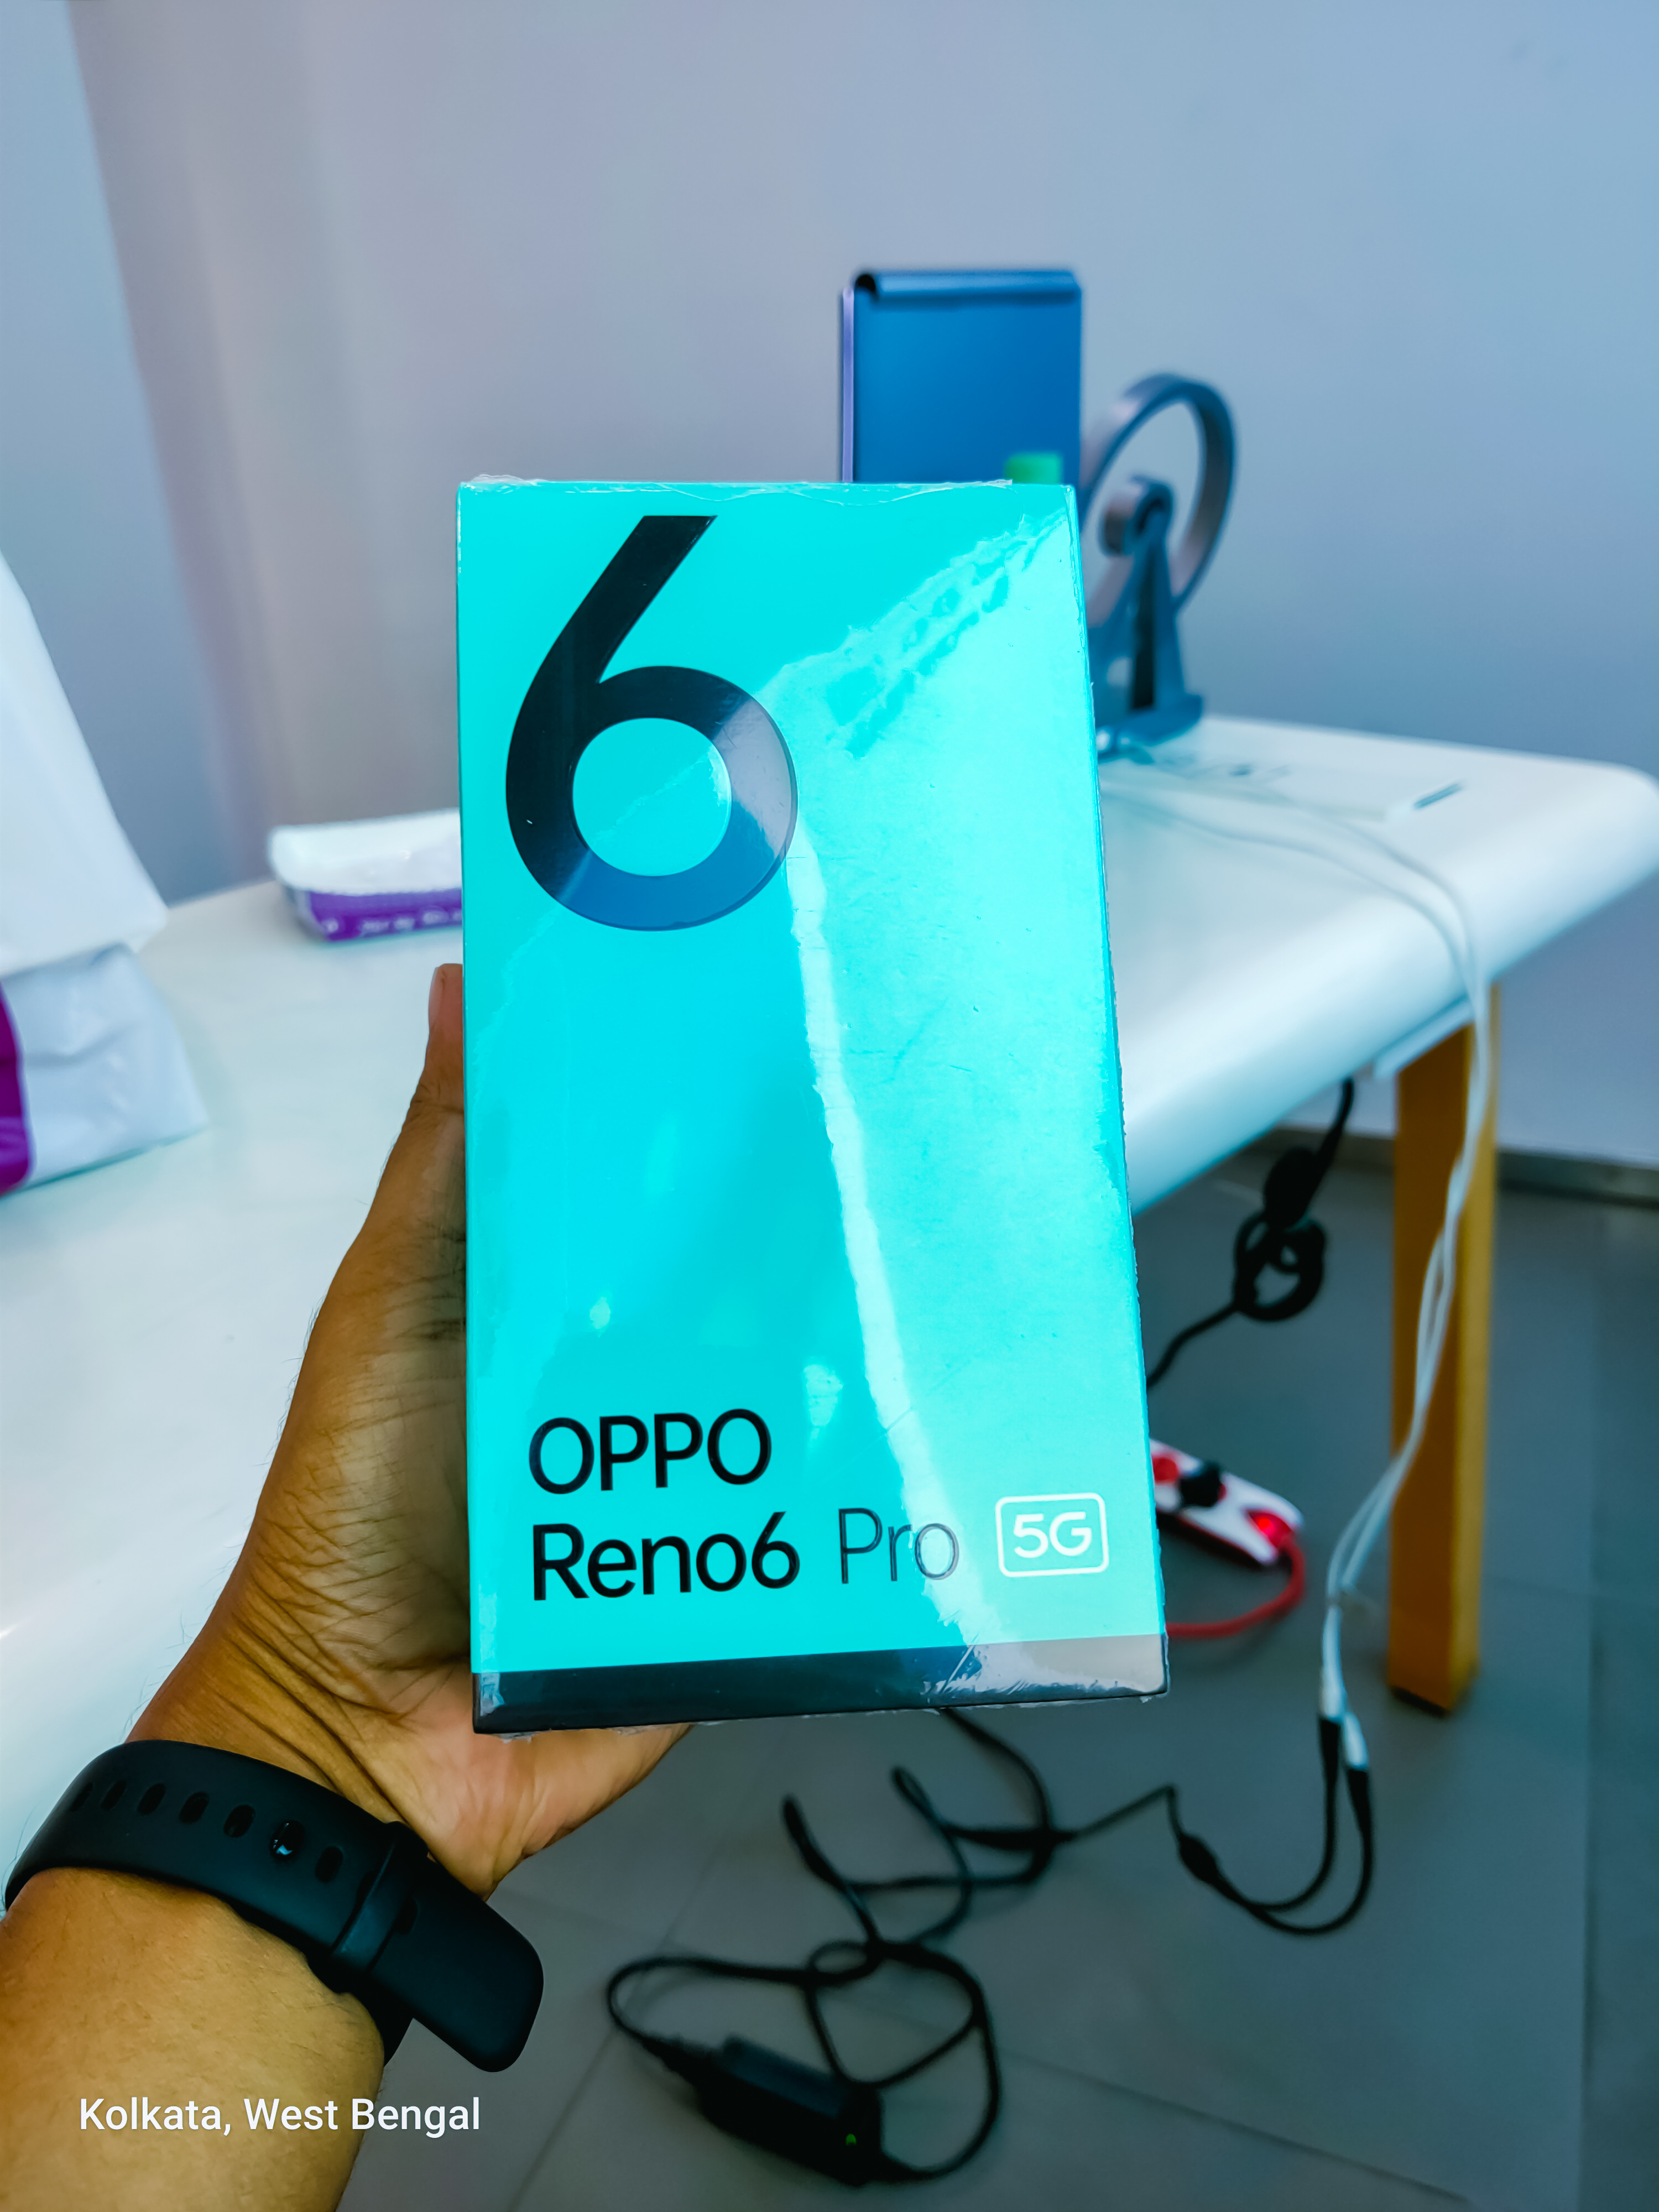 OPPO Reno6 Pro  UNBOXING 